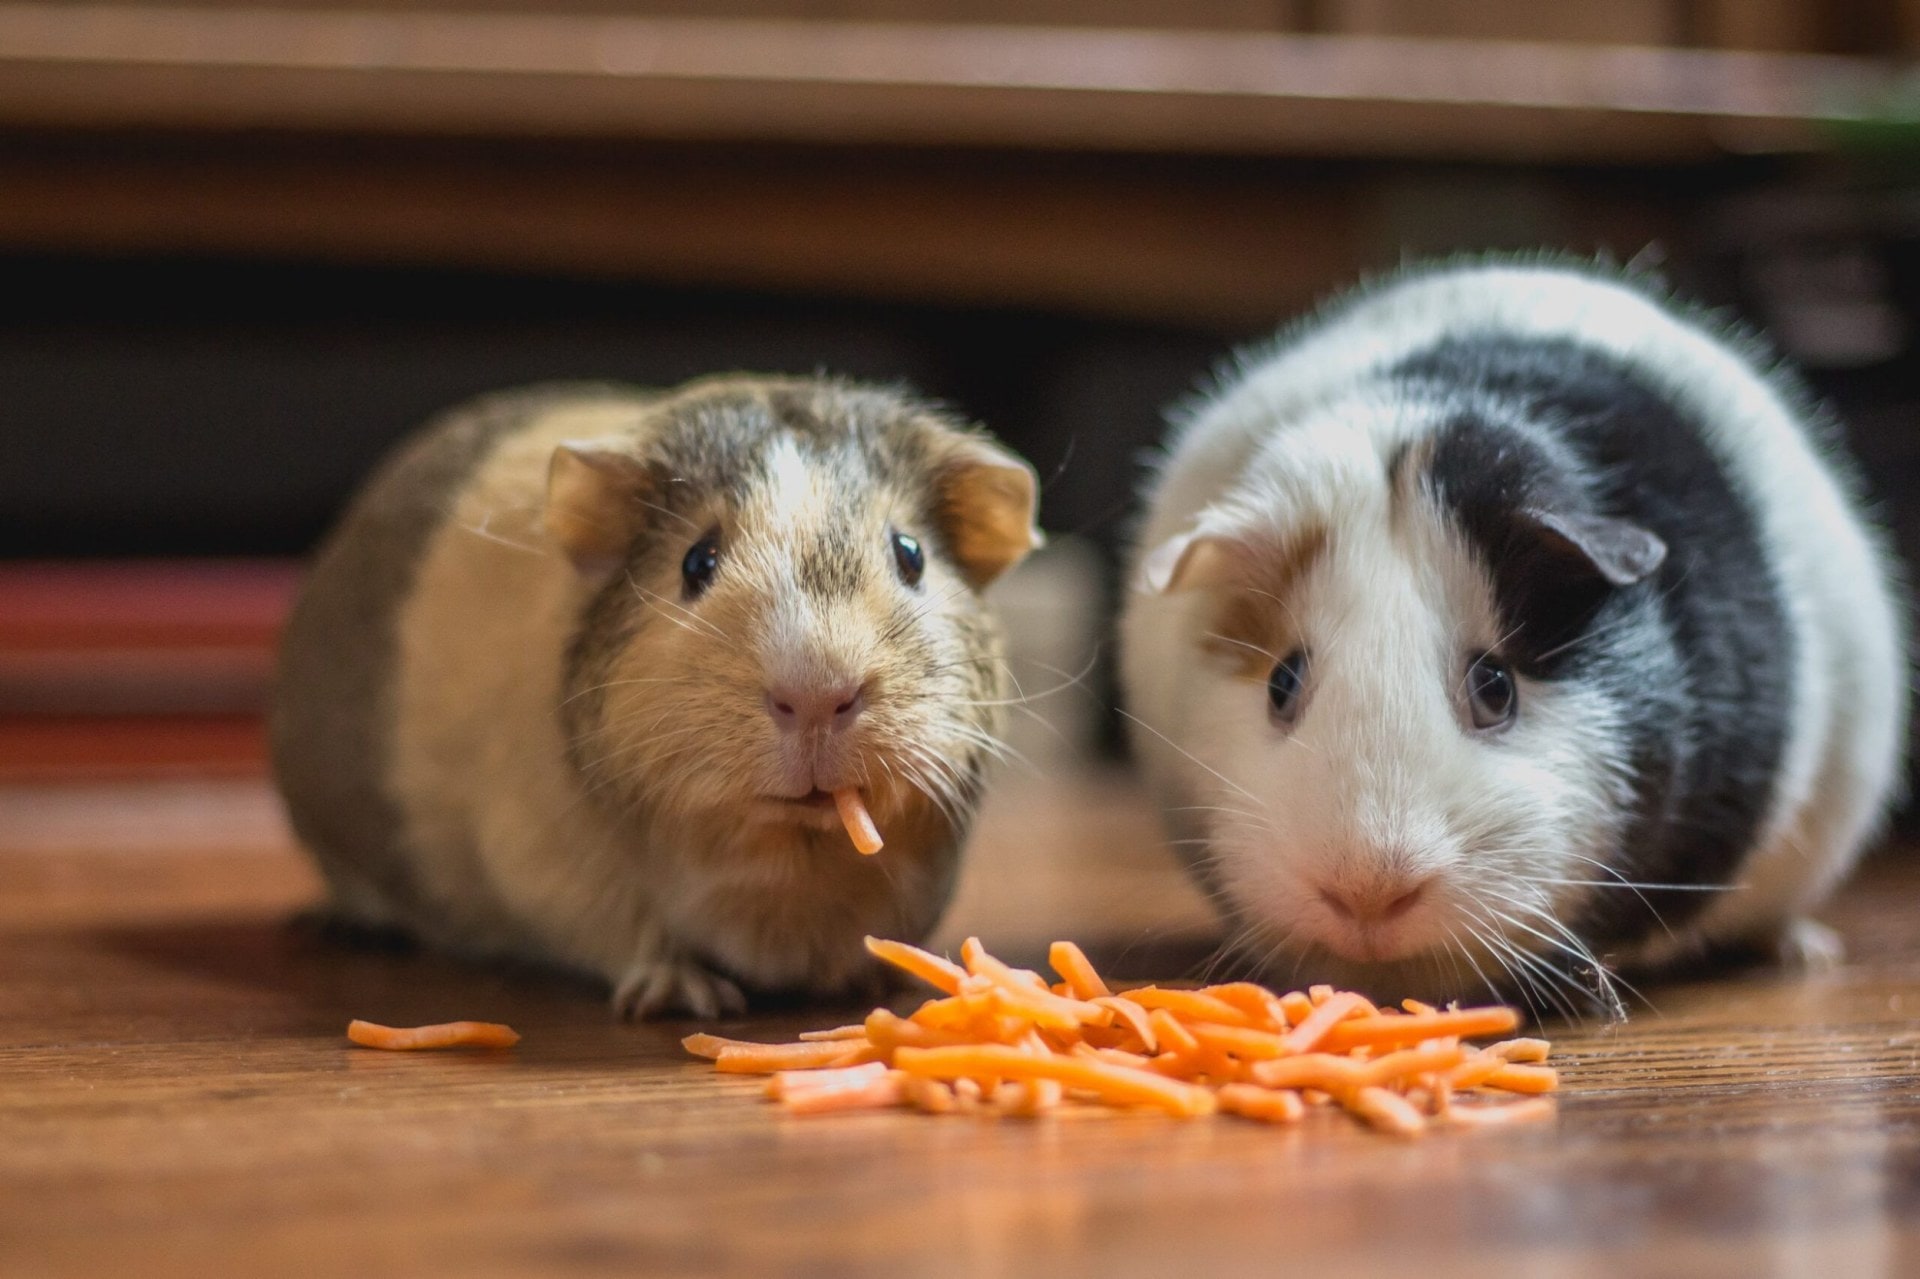 Two guinea pigs eating shredded carrot